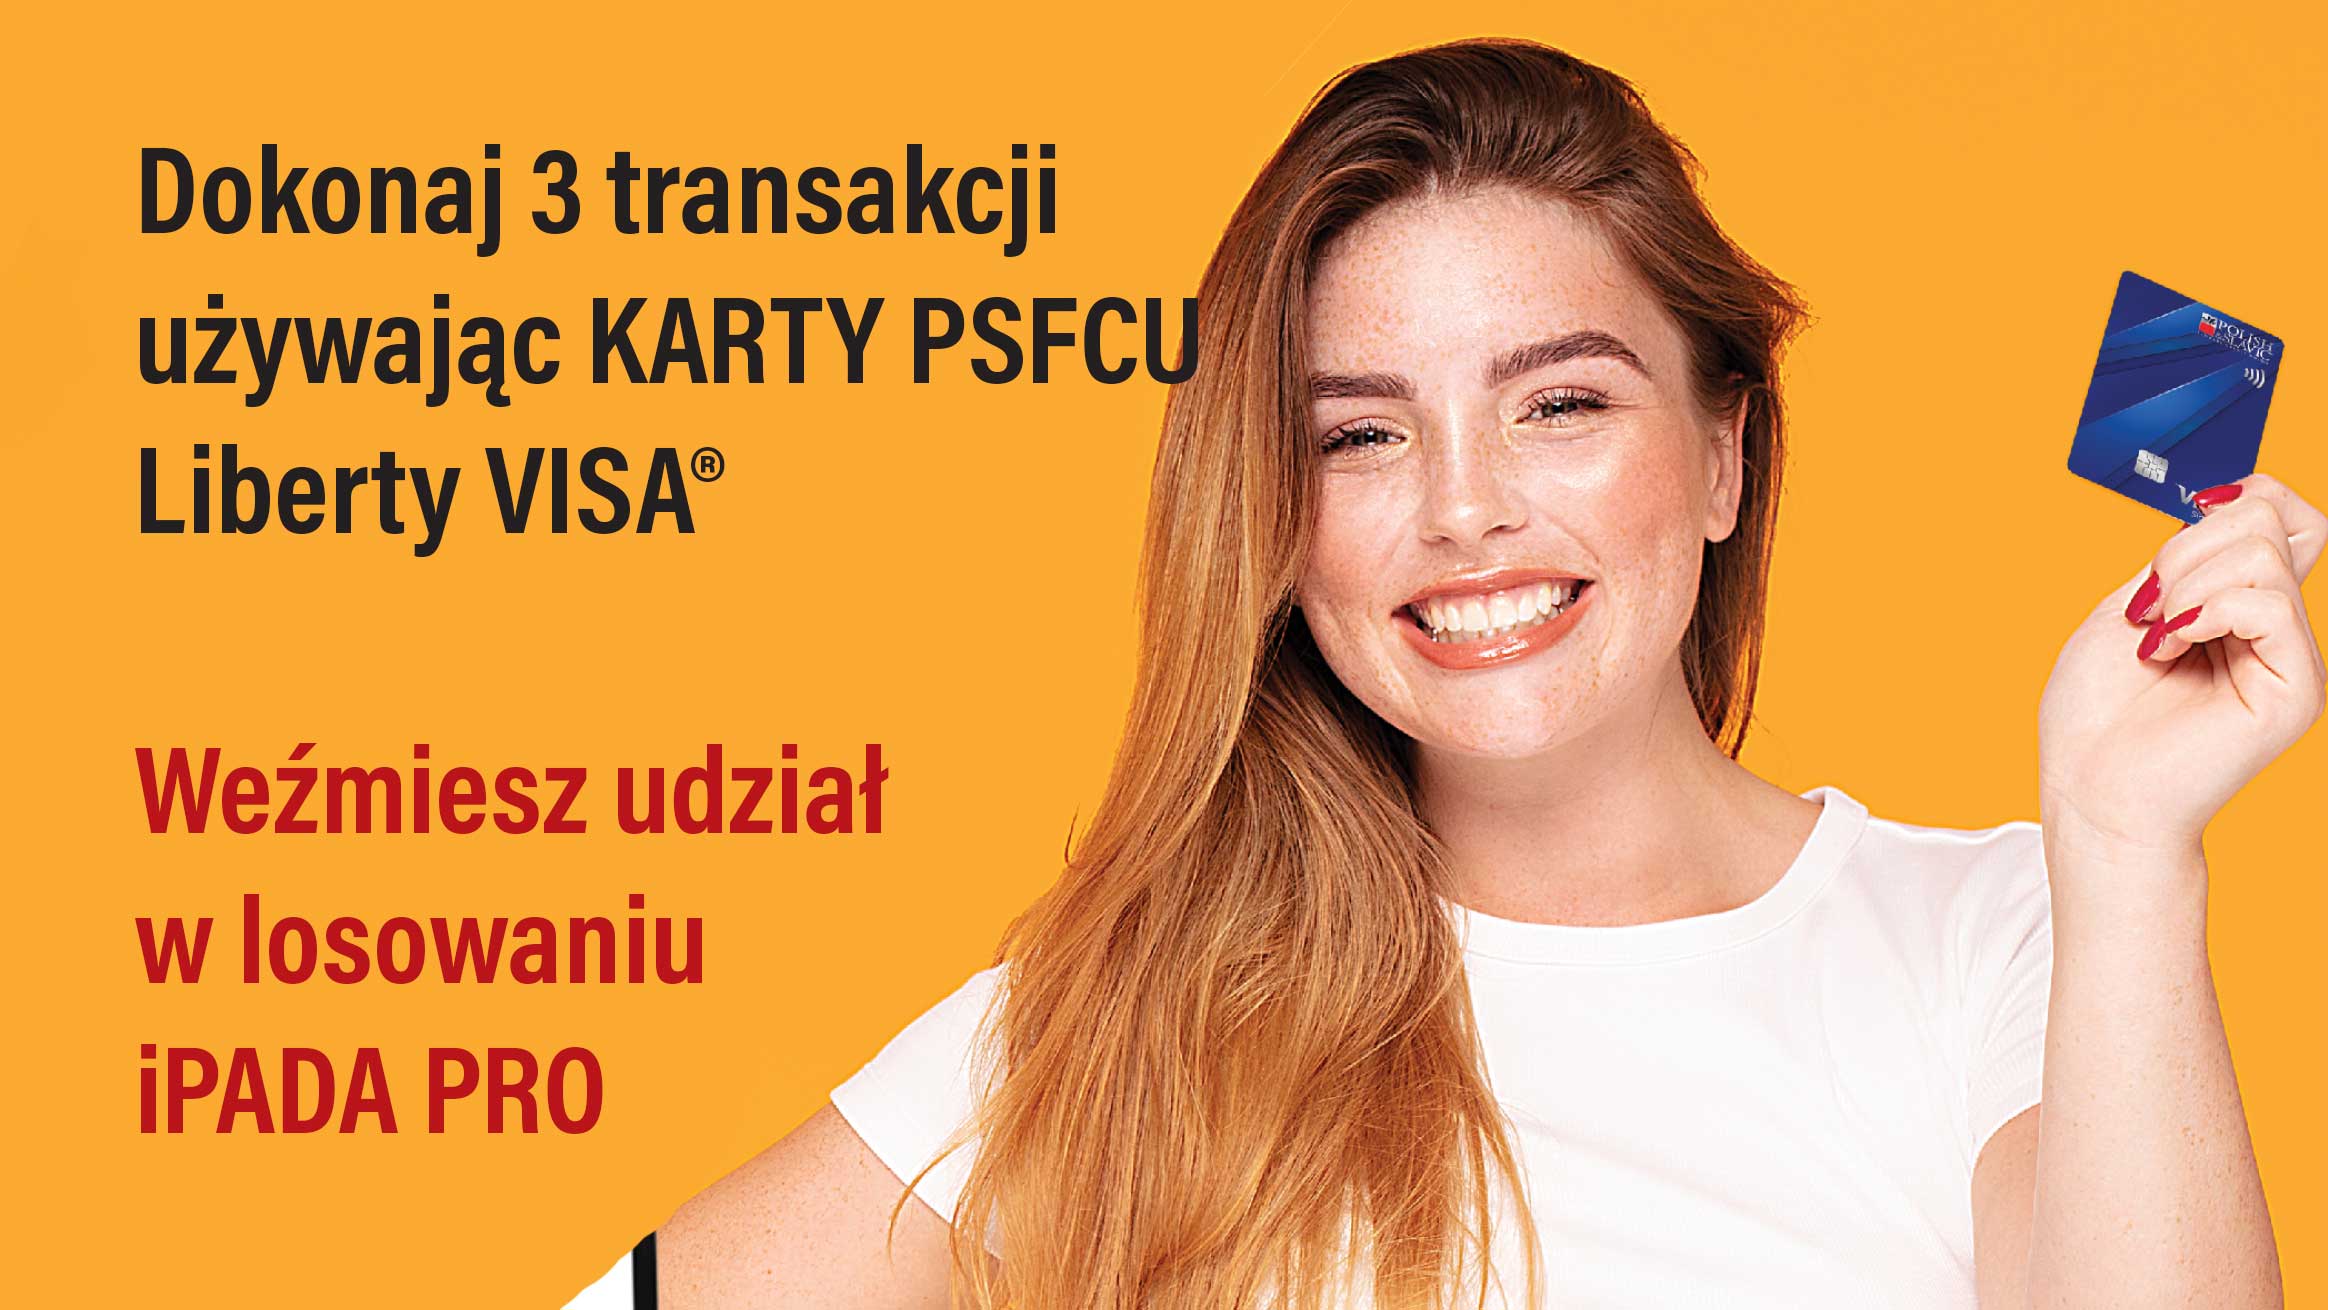 Używając Karty PSFCU Liberty Visa możesz wylosować iPAD PRO